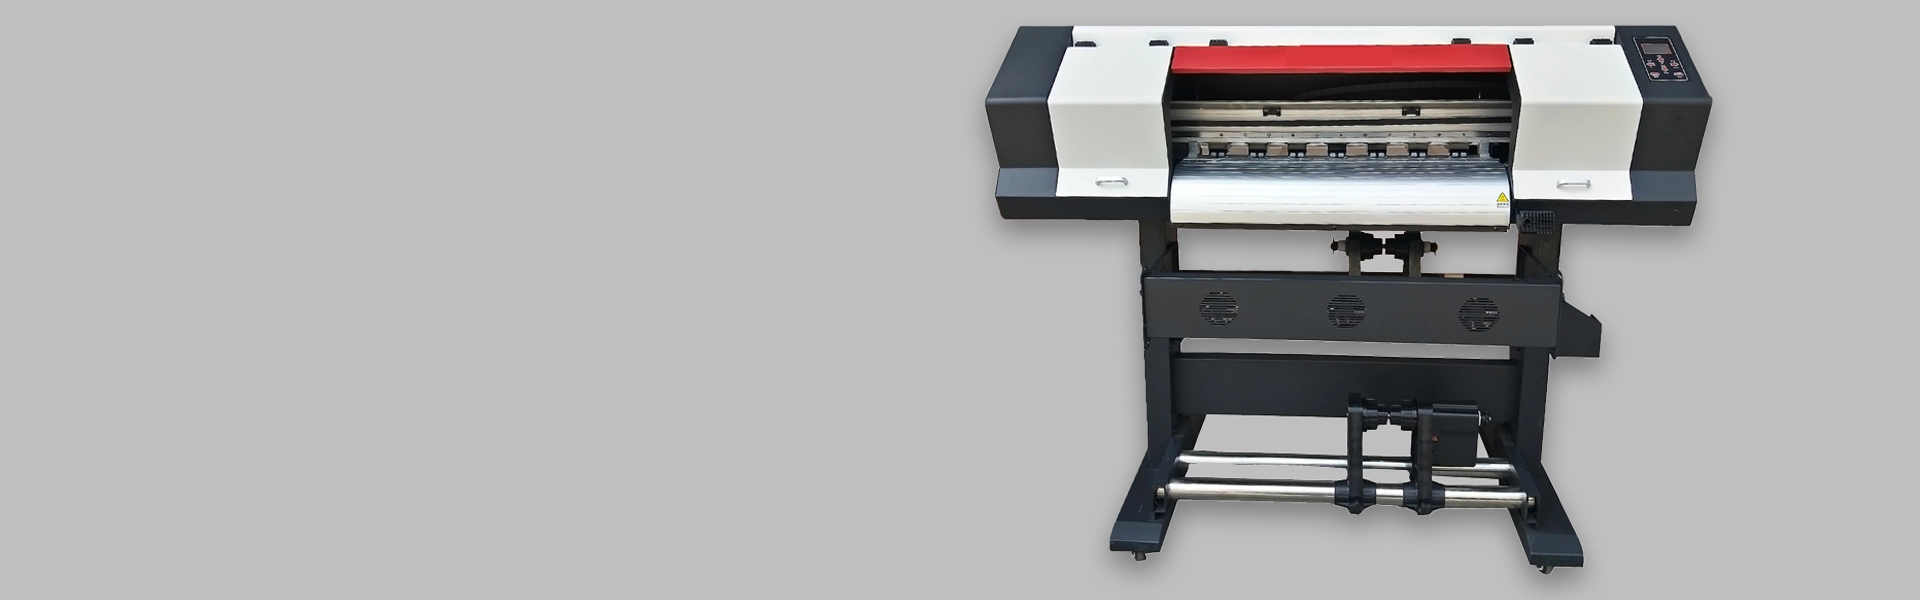 70-сантиметровый сублимационный принтер